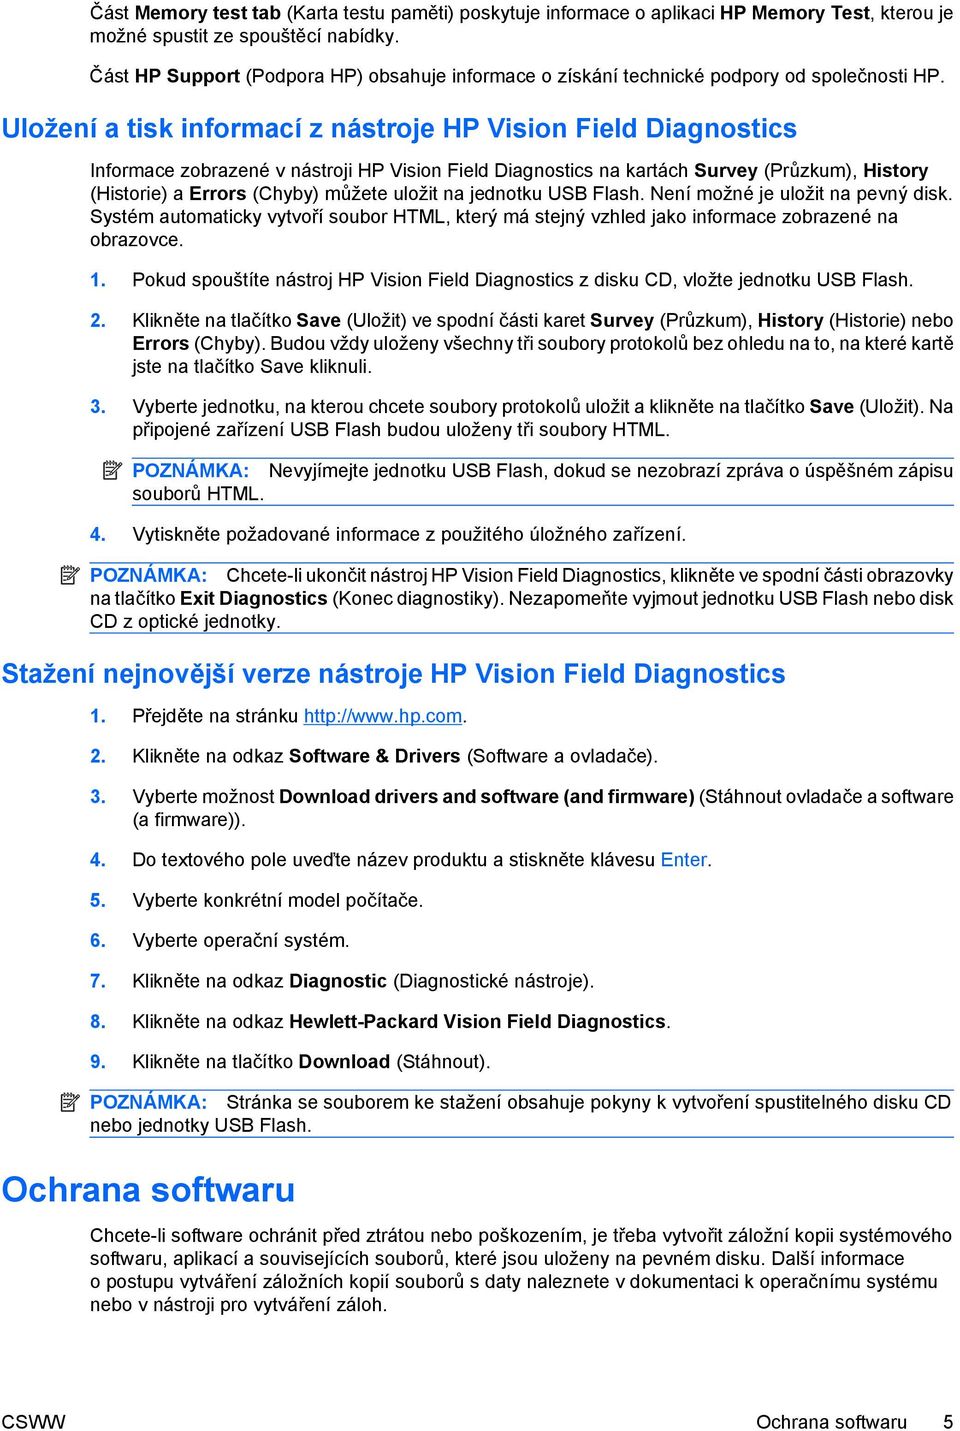 Uložení a tisk informací z nástroje HP Vision Field Diagnostics Informace zobrazené v nástroji HP Vision Field Diagnostics na kartách Survey (Průzkum), History (Historie) a Errors (Chyby) můžete